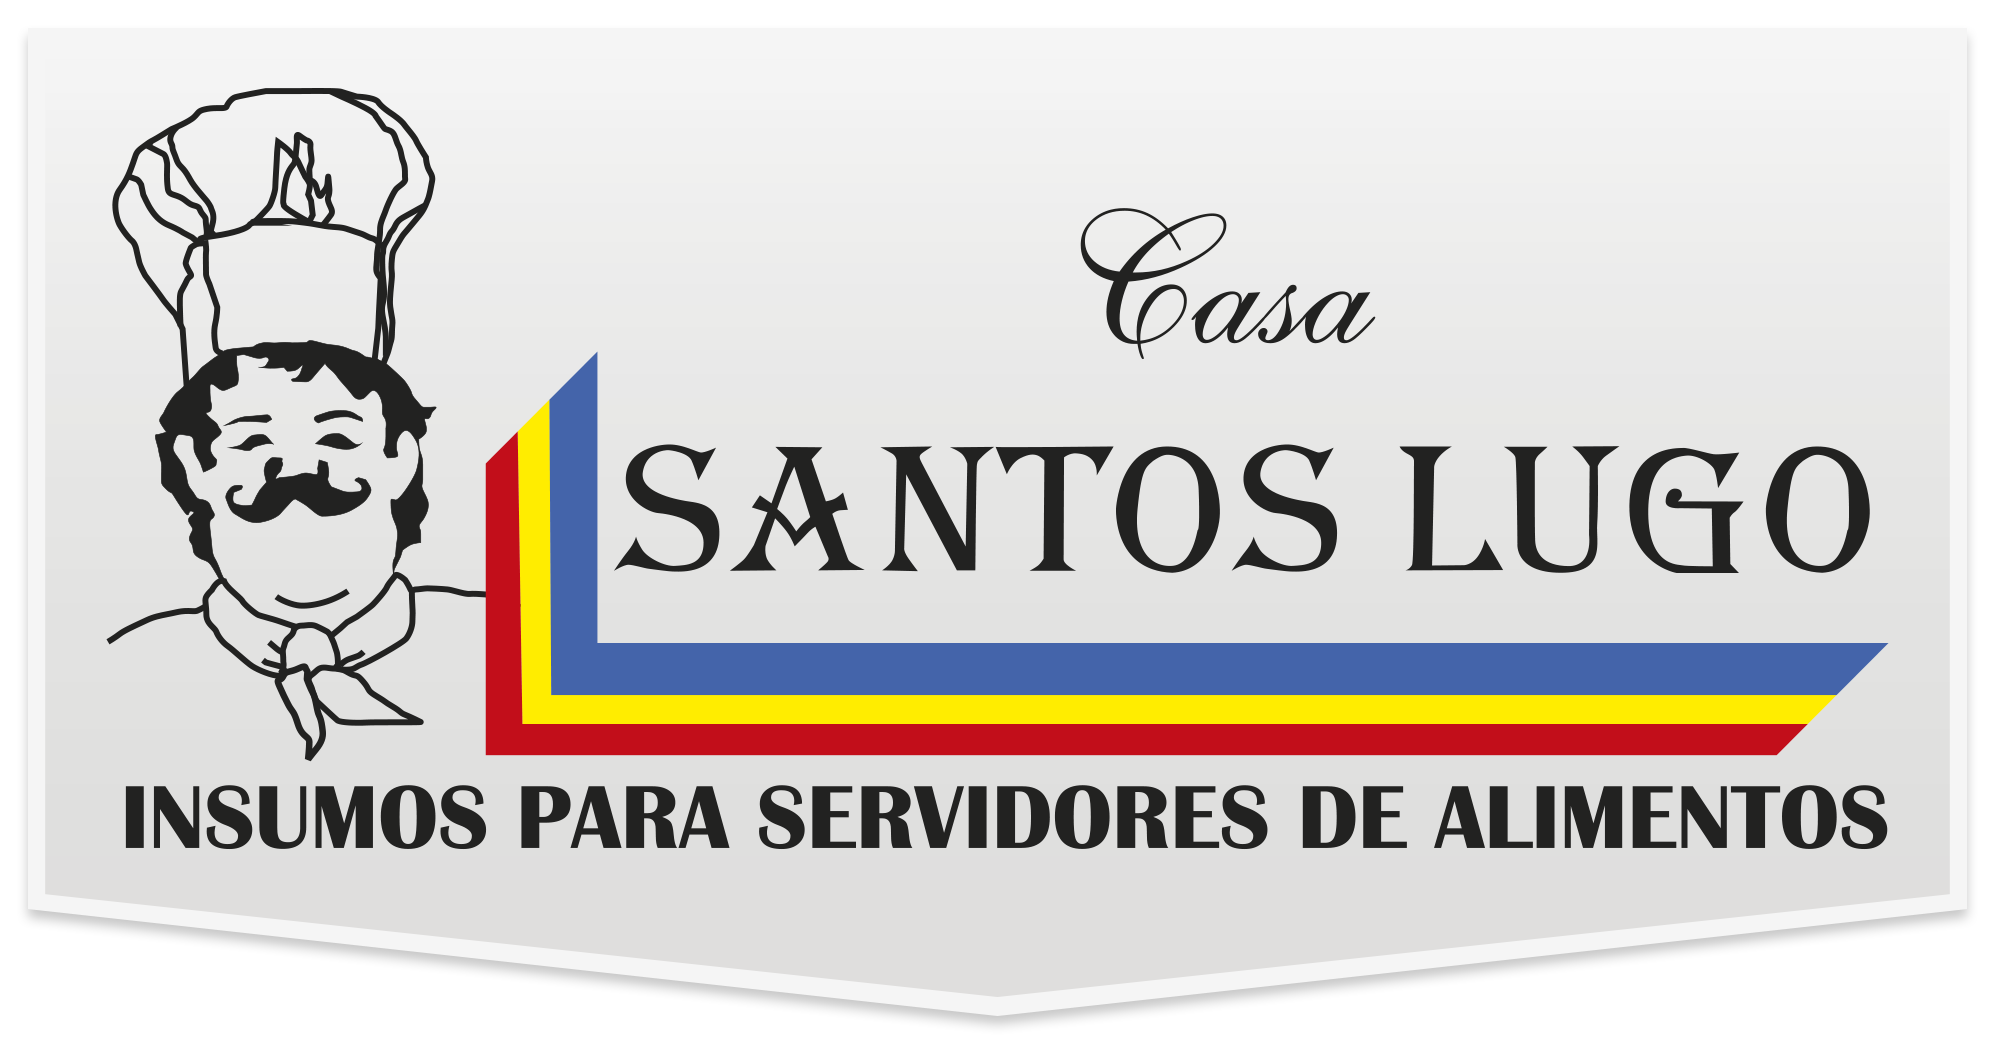 Santos Lugo | Categoría Cervezas,Vinos y Licores